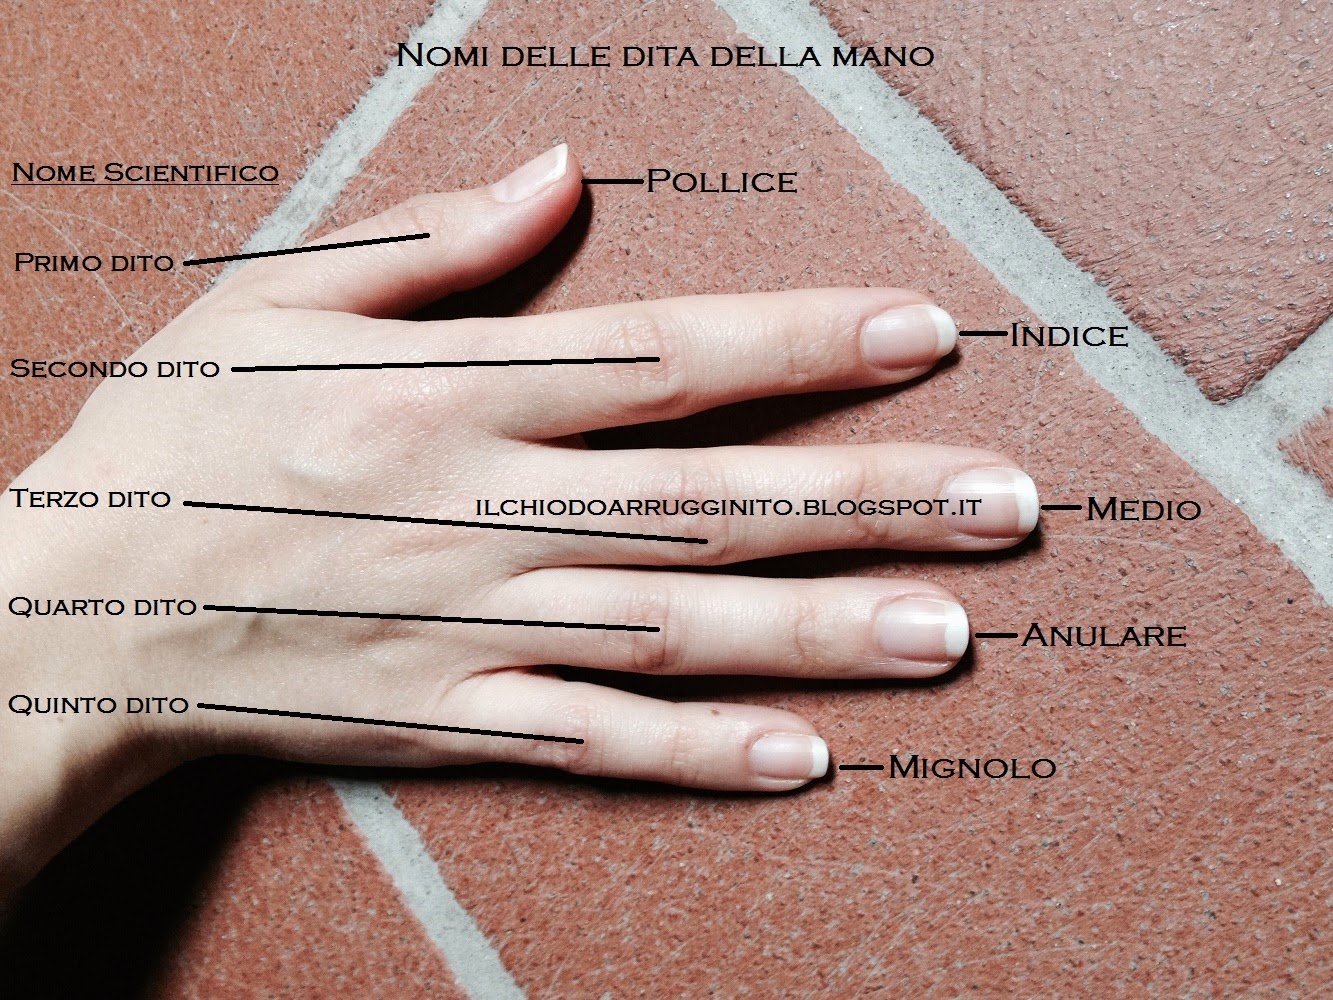 Quali sono i nomi delle dita della mano